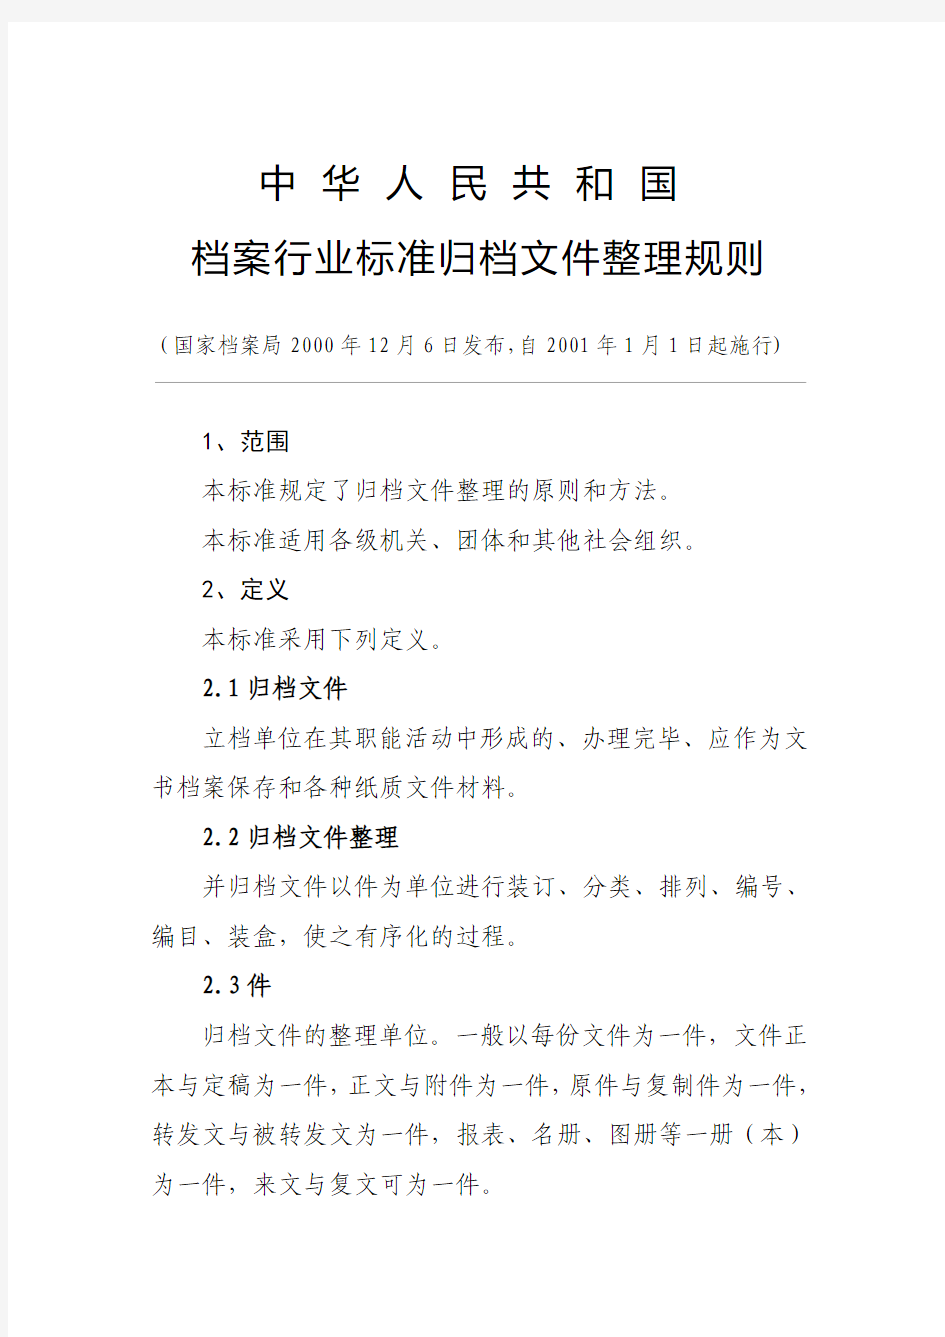 4 中华人民共和国档案行业标准归档文件整理规则